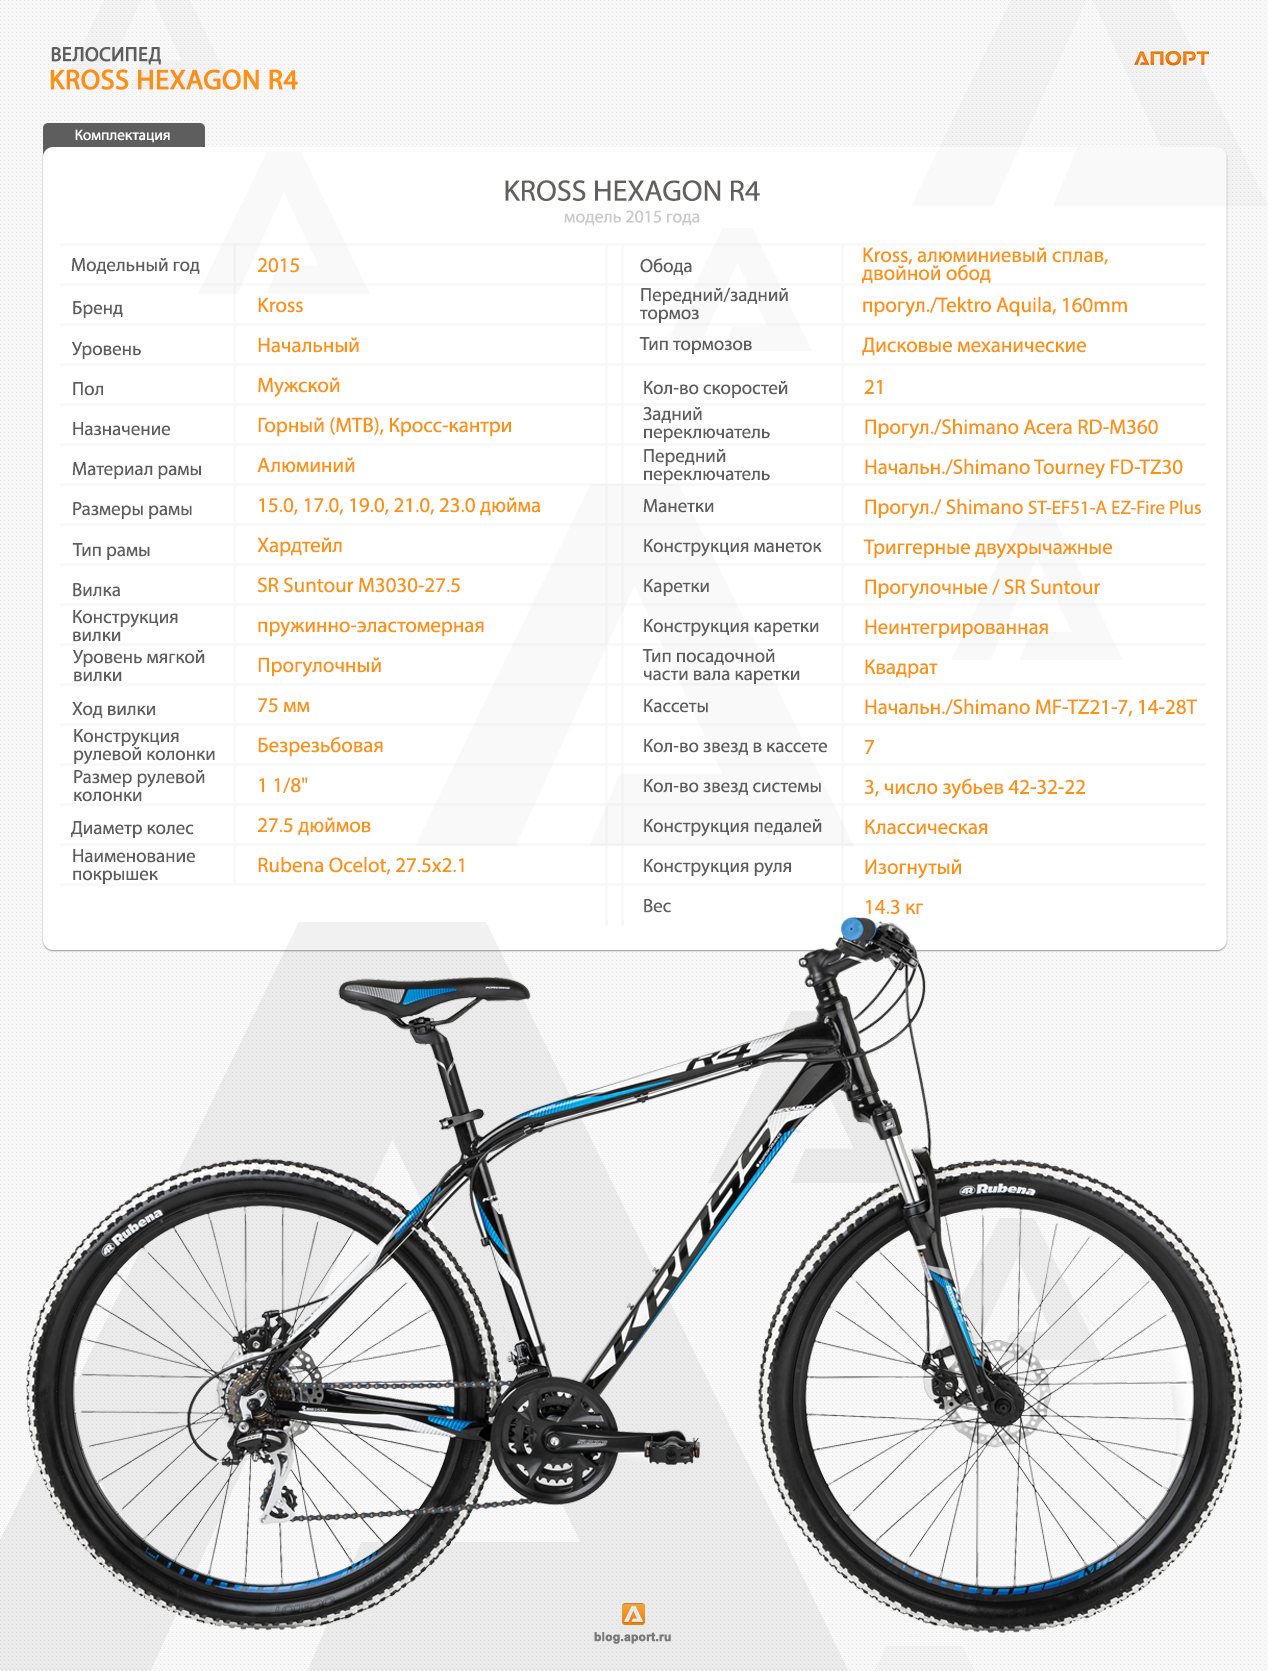 Покупка бюджетного велосипеда: до 30 тыс.рублей